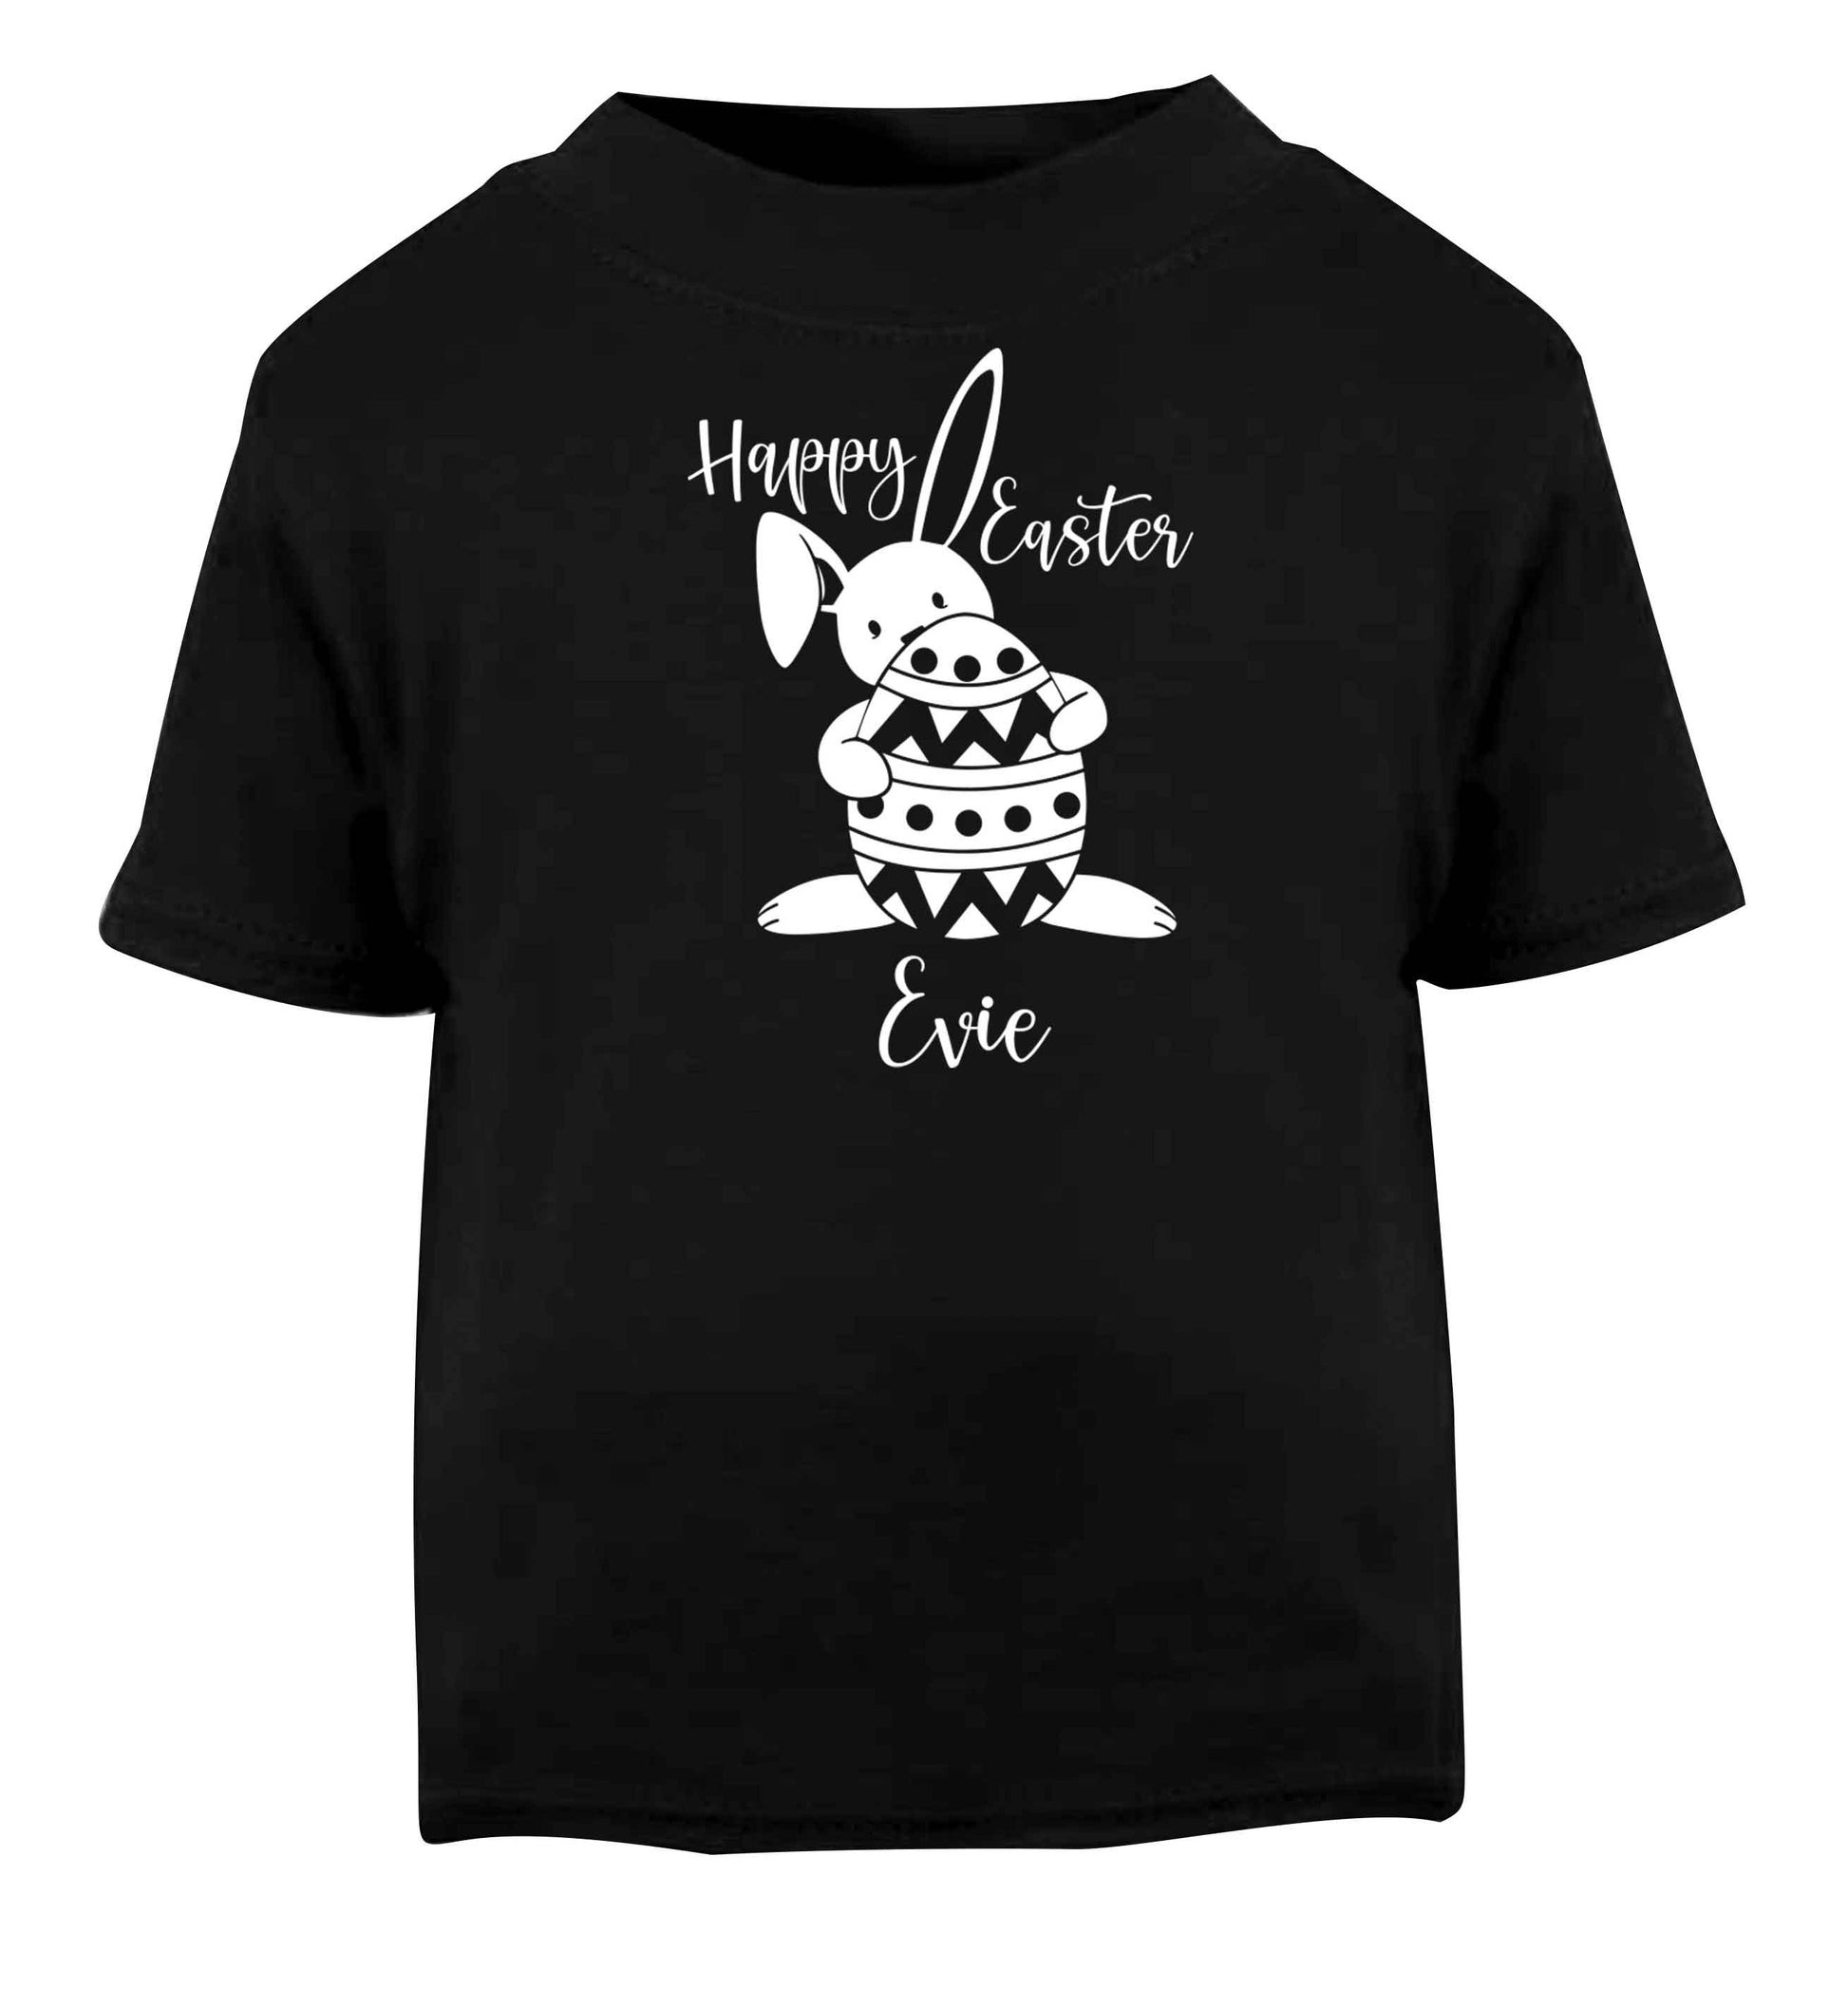 Happy Easter - personalised Black baby toddler Tshirt 2 years